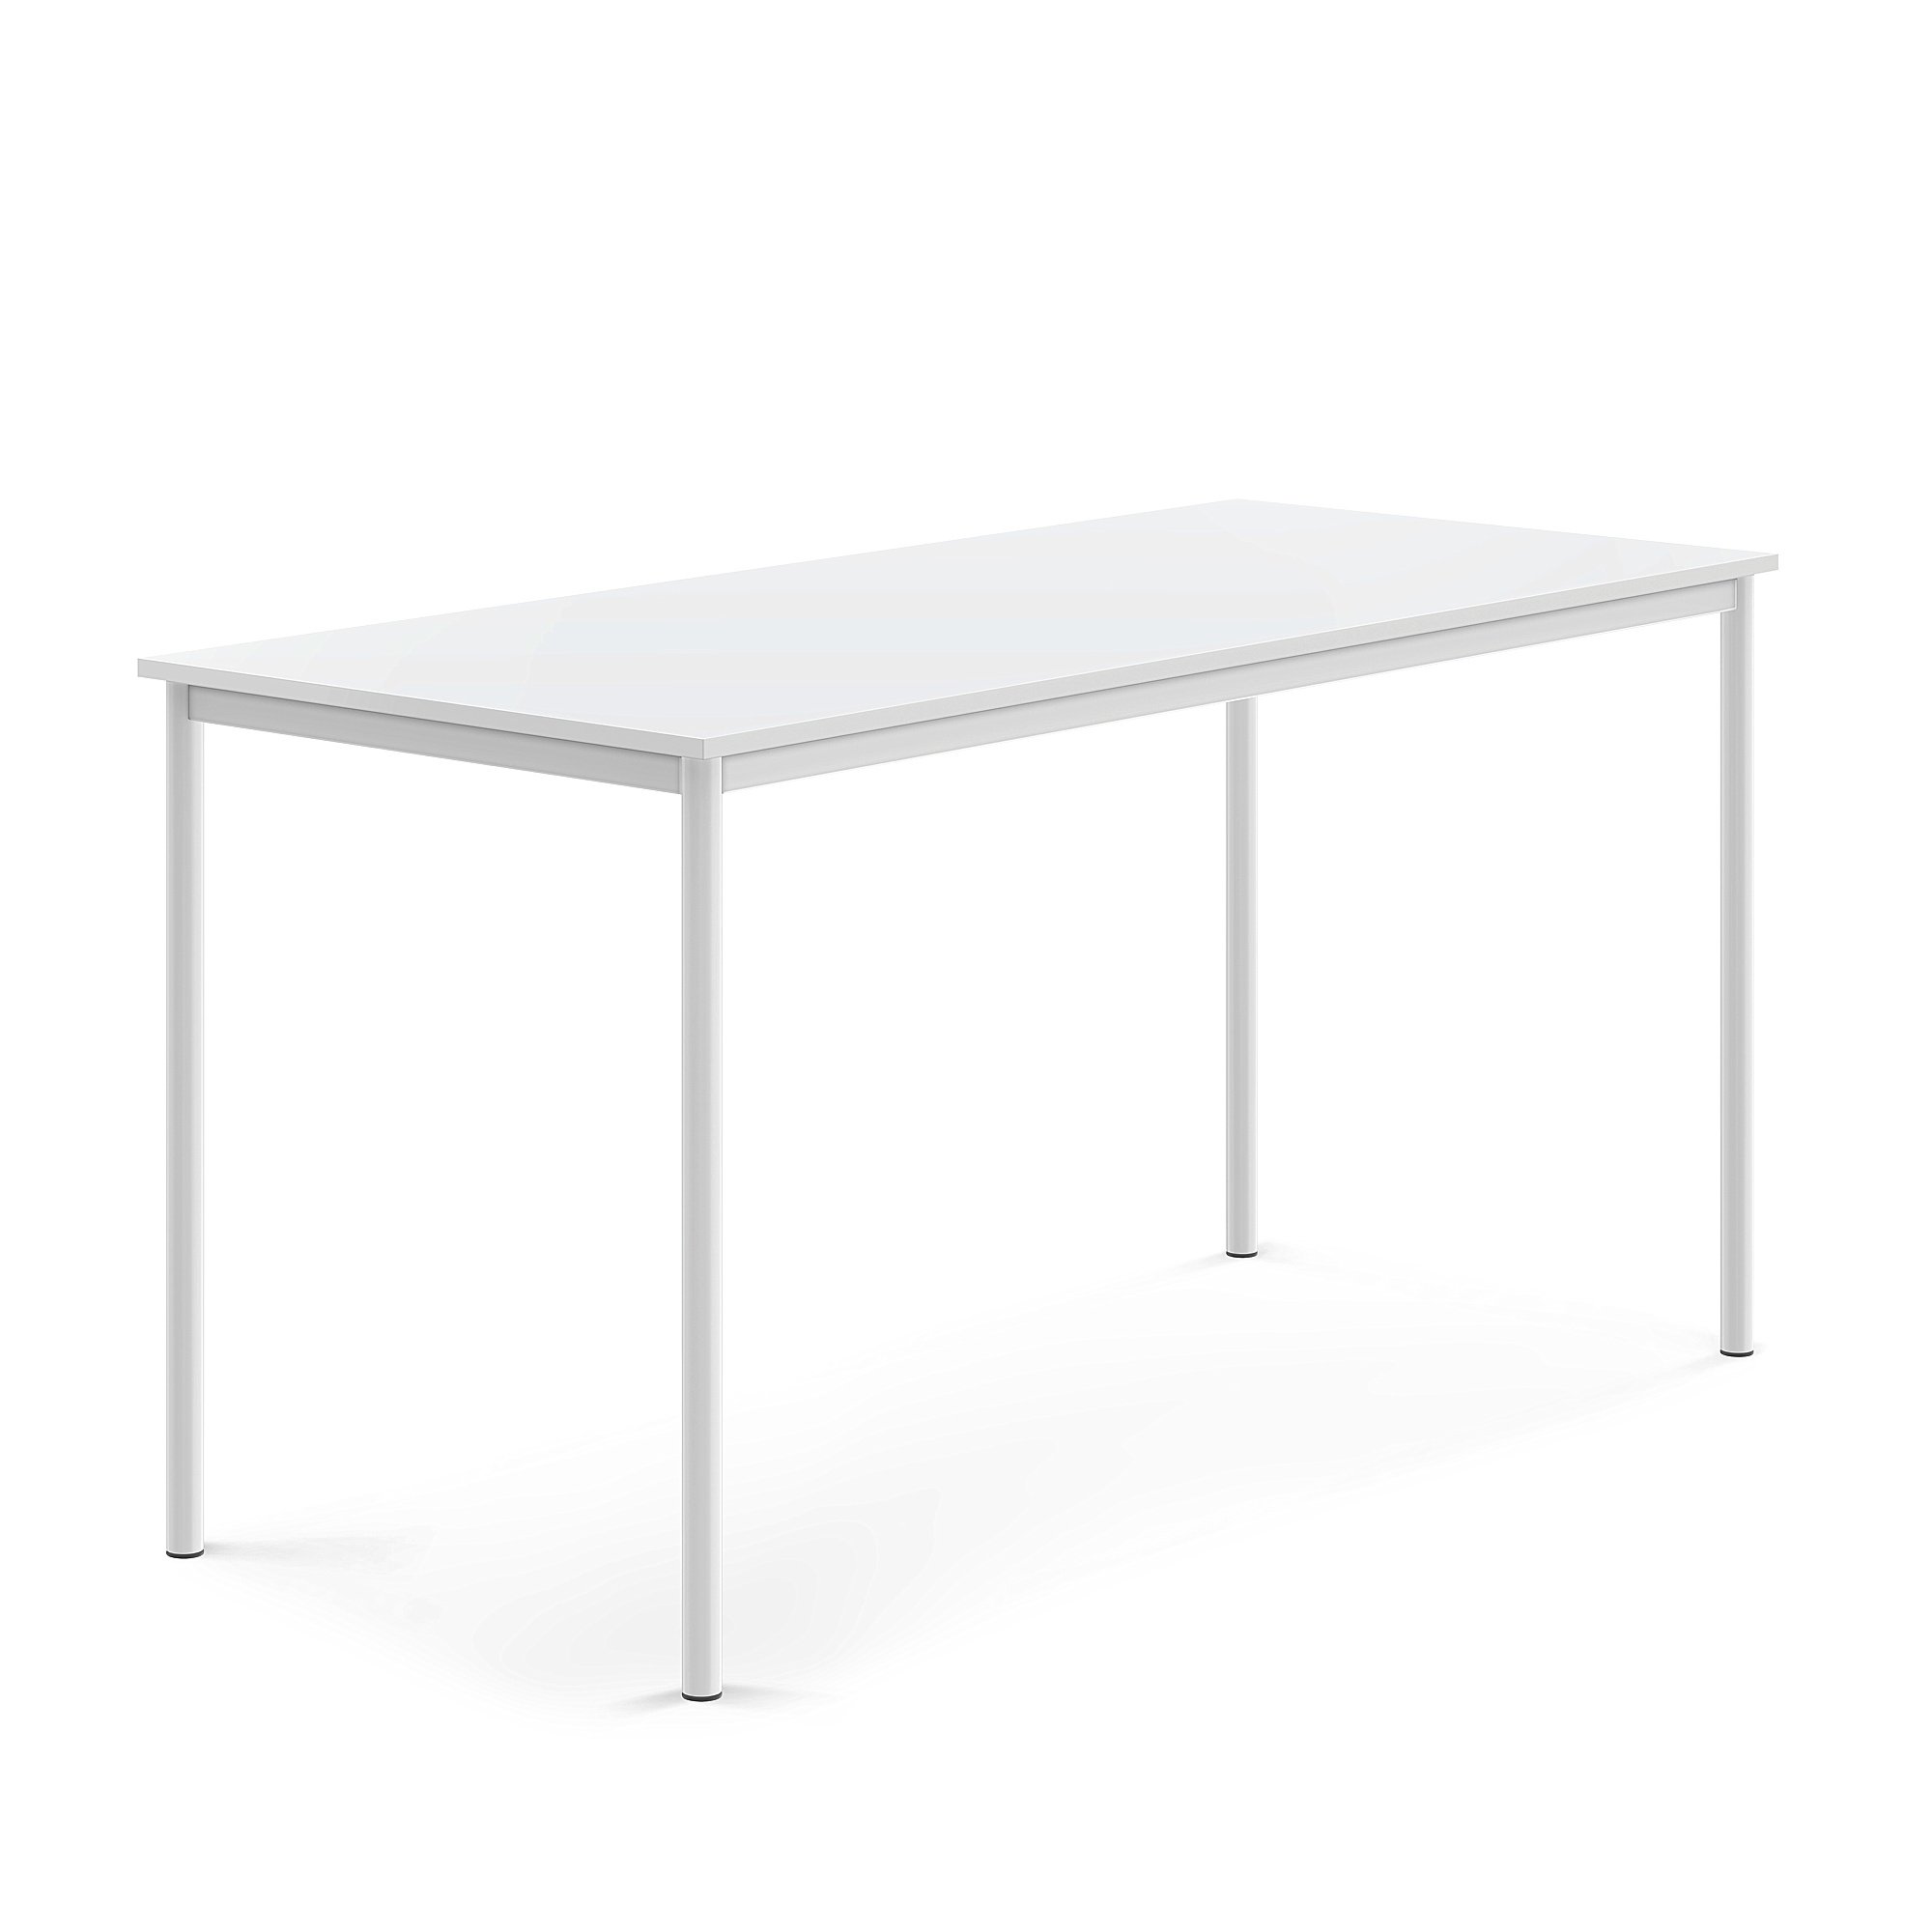 Stôl SONITUS, 1800x800x900 mm, HPL - biela, biela